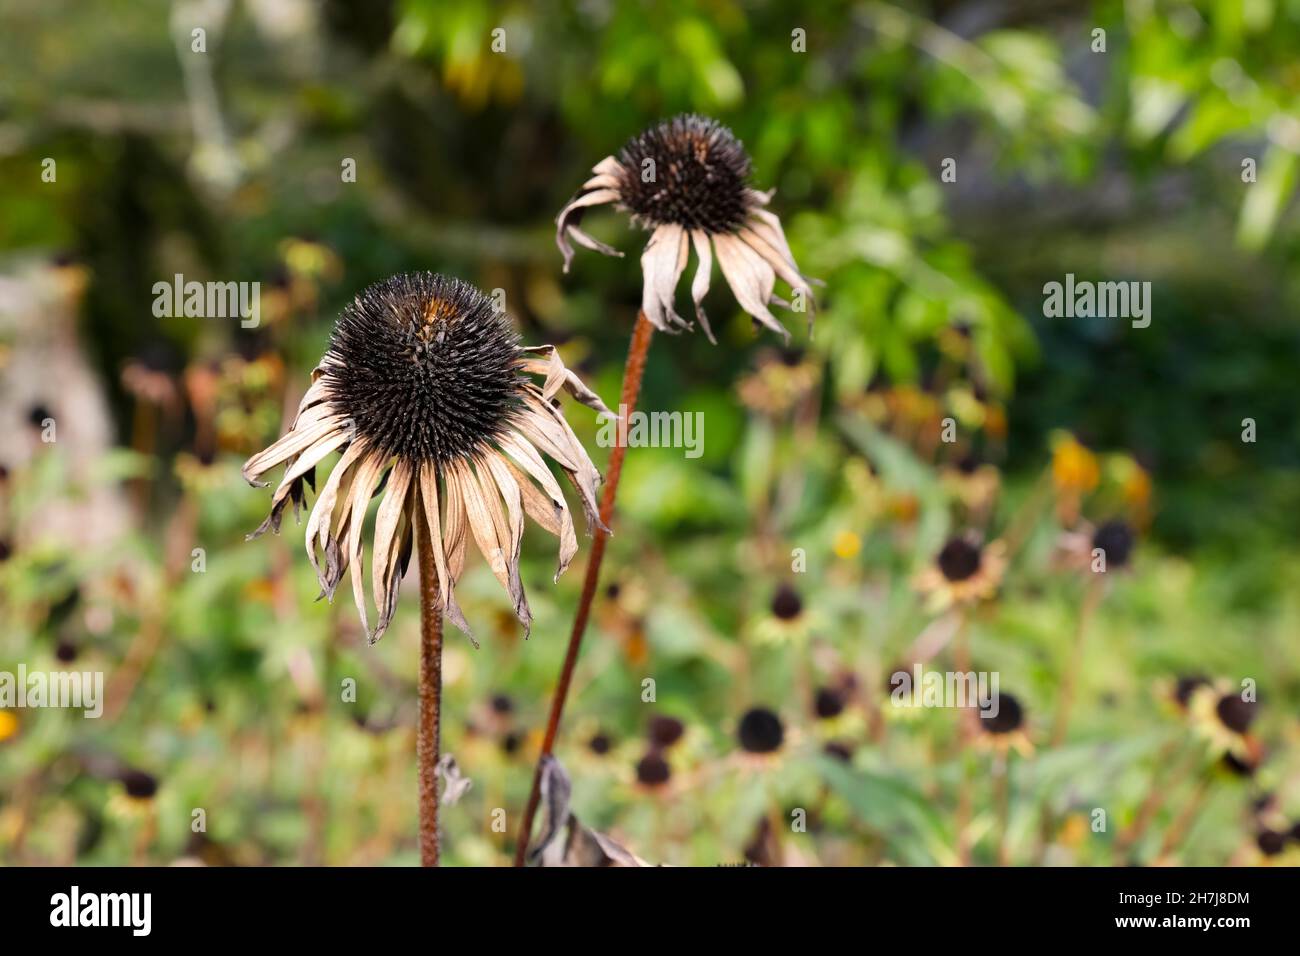 Natürlich getrocknete Samenköpfe der Koneblume sind vor dem Hintergrund der Gartenumgebung zu sehen. Stockfoto